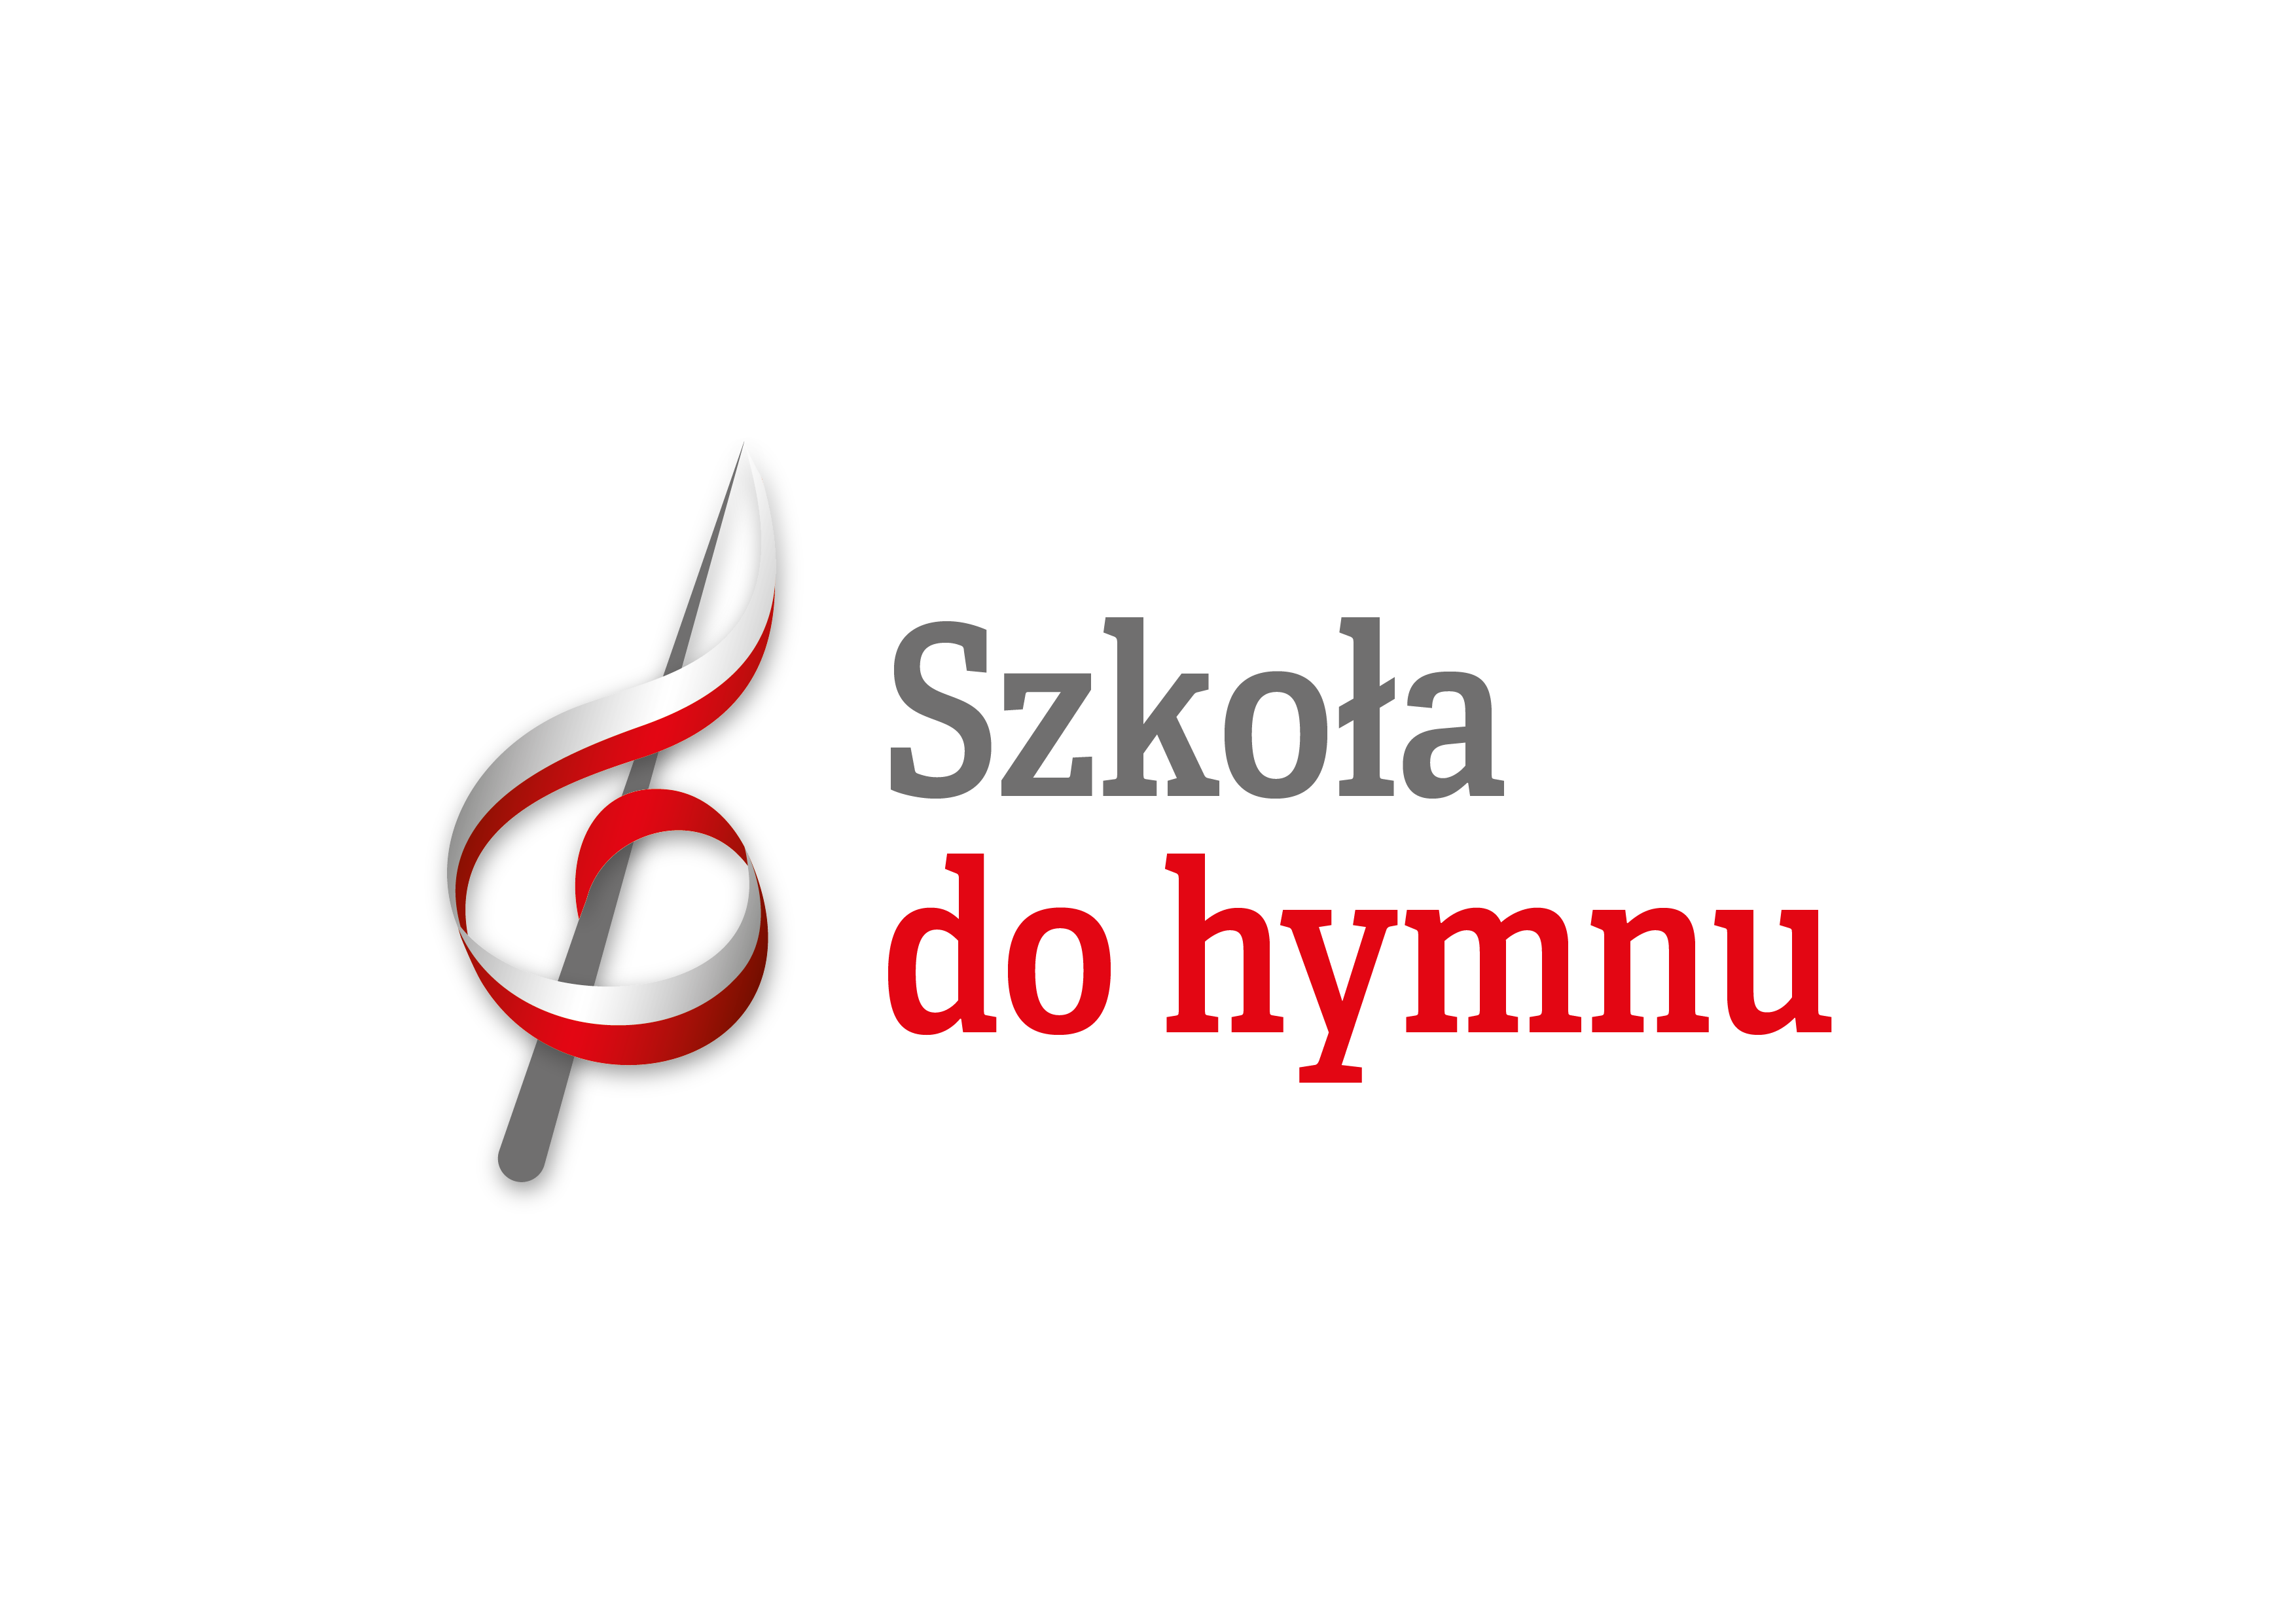 Ponad 19 tys. zgłoszeń do akcji „Szkoła do hymnu” – jutro wielki finał! -  Ministerstwo Edukacji i Nauki - Portal Gov.pl